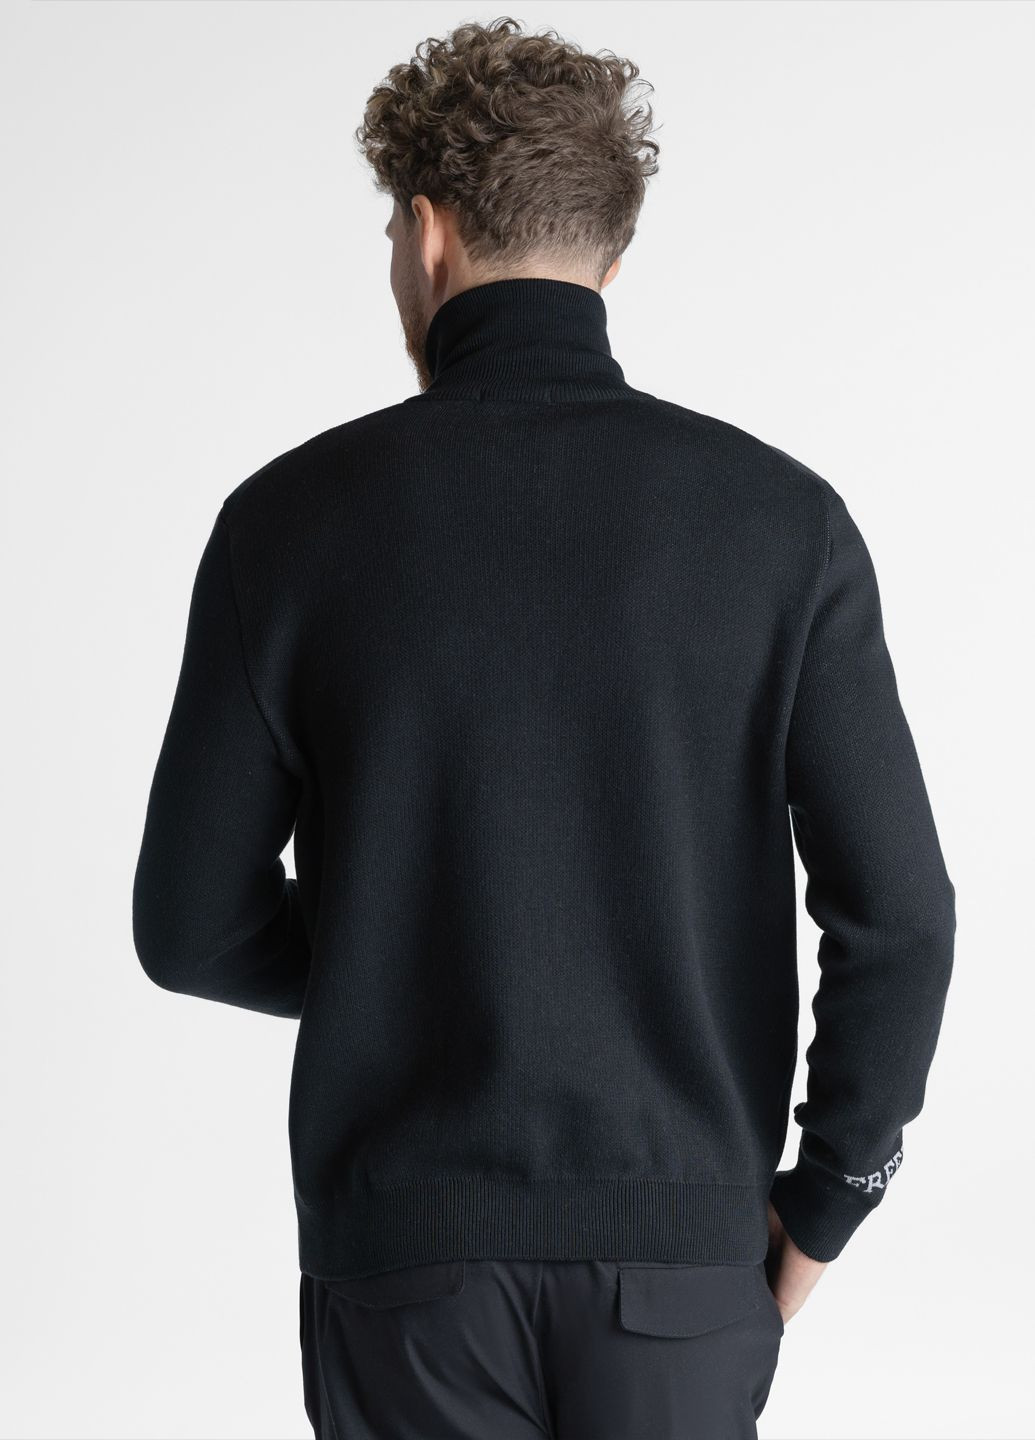 Черный демисезонный свитер мужской freedom черный Arber Zipper-Neck N-AVT-74